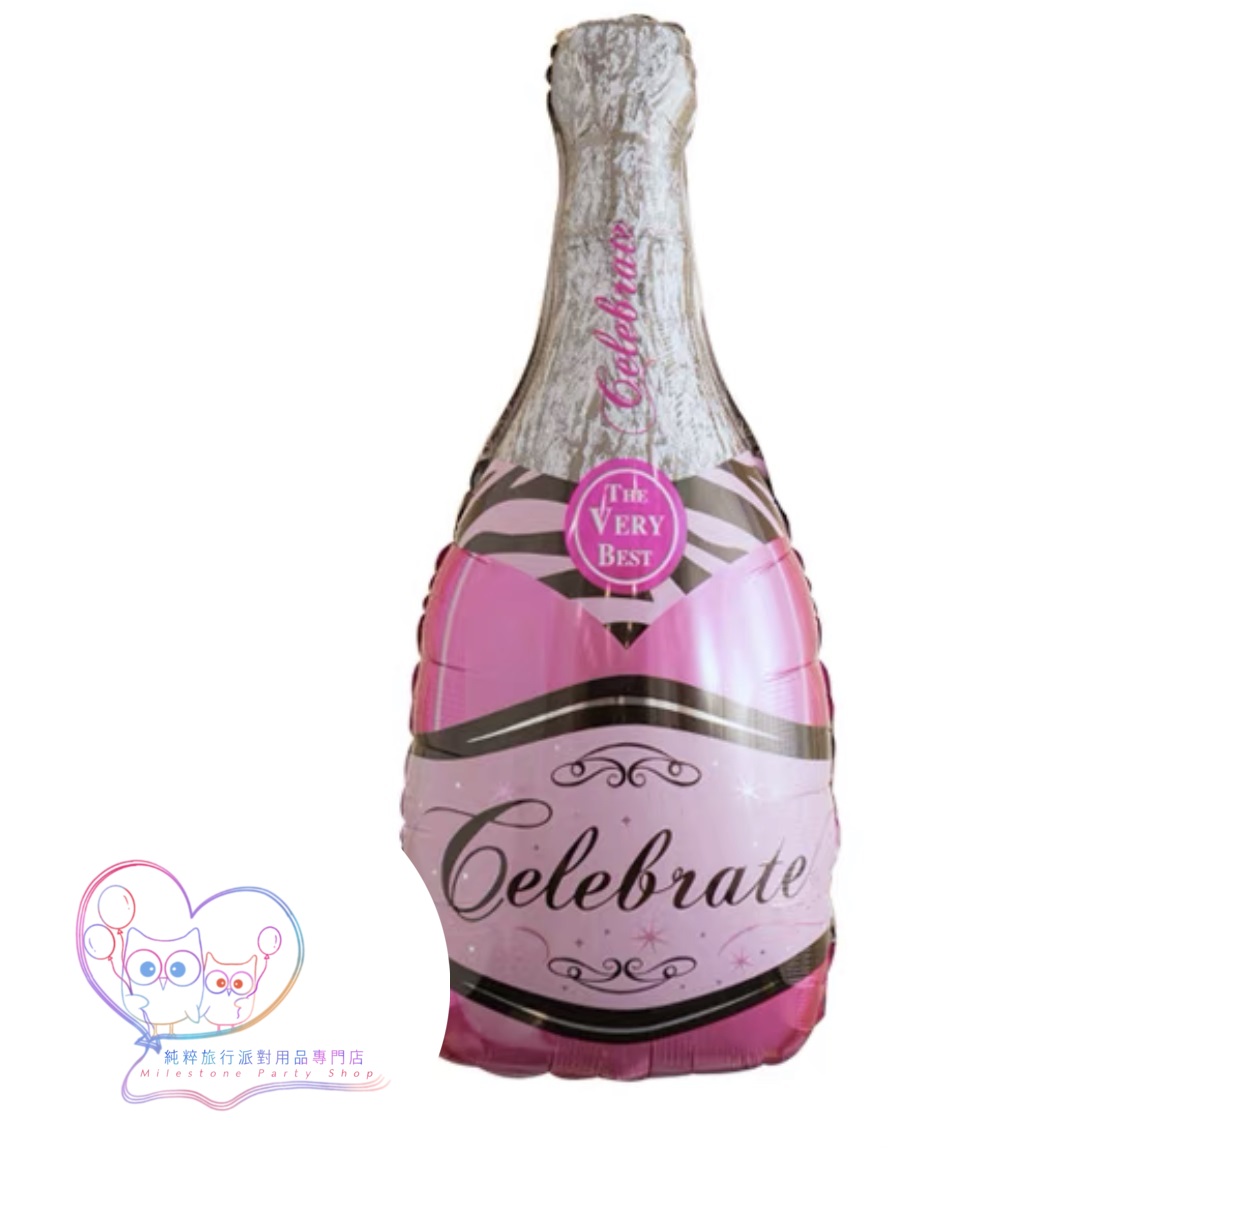 42吋香檳酒瓶鋁膜氣球 (粉紅色) FBAS3